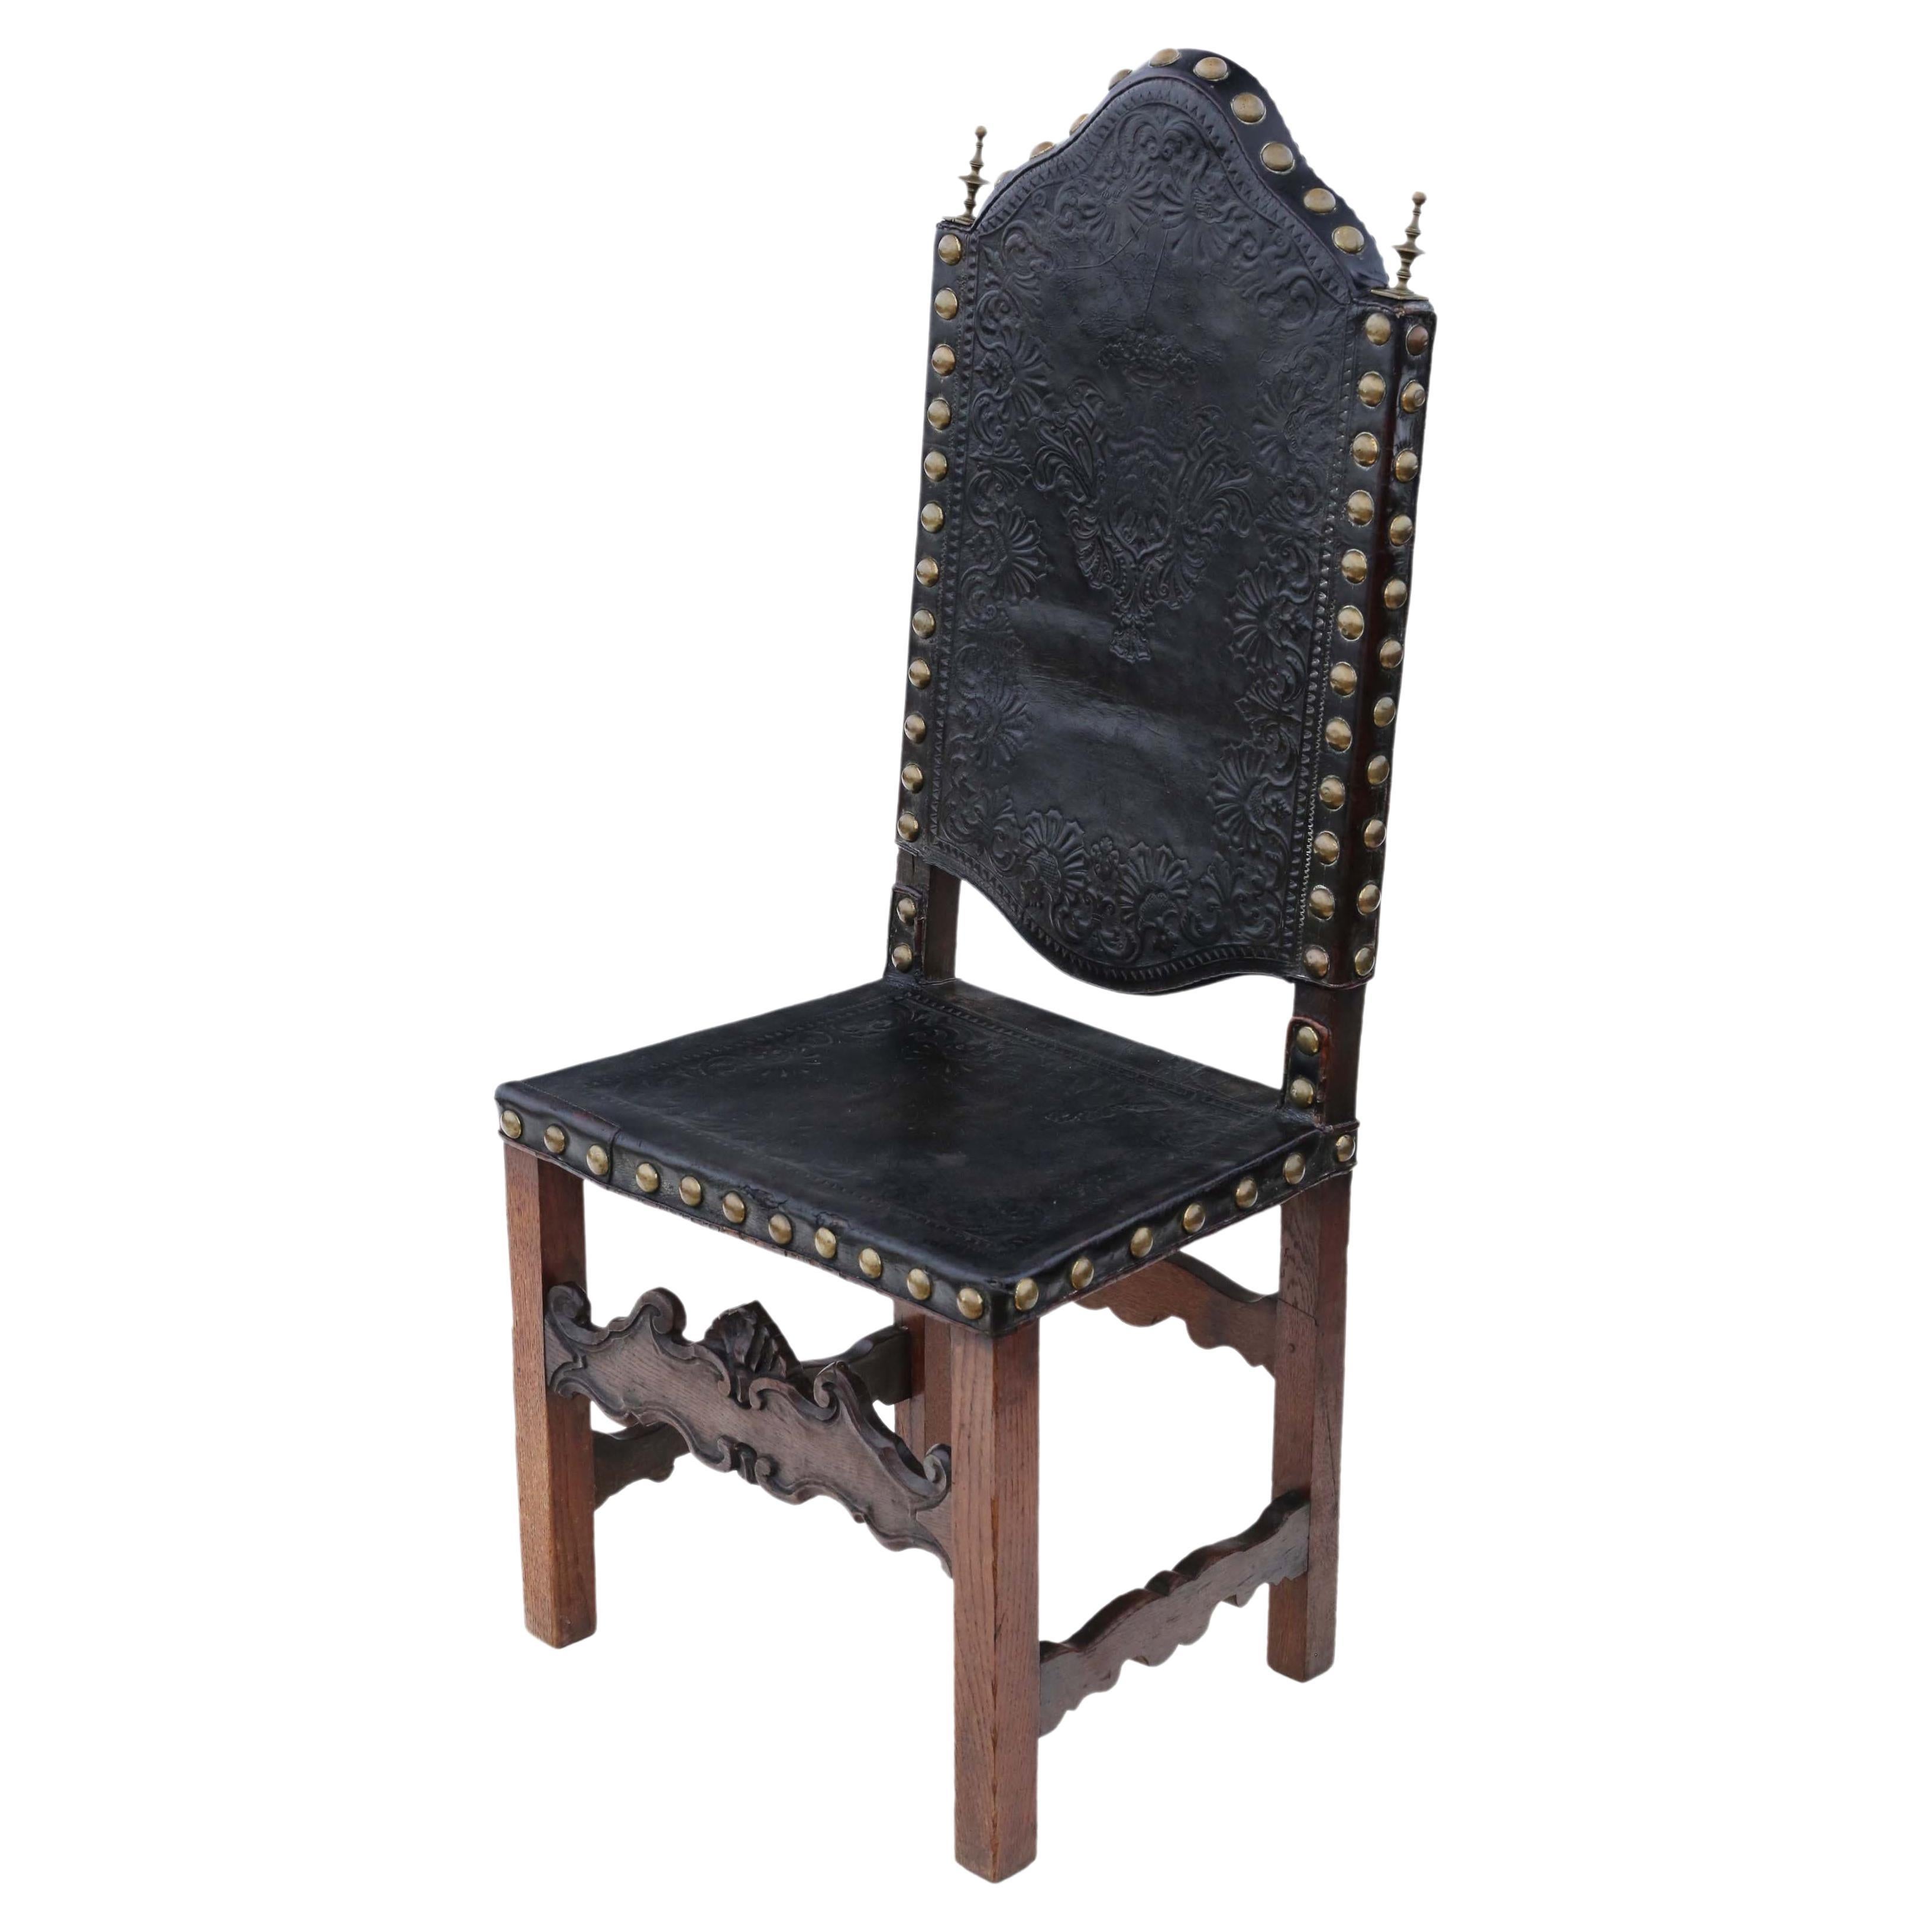 Ancienne chaise portugaise en chêne et cuir du début du 18ème siècle